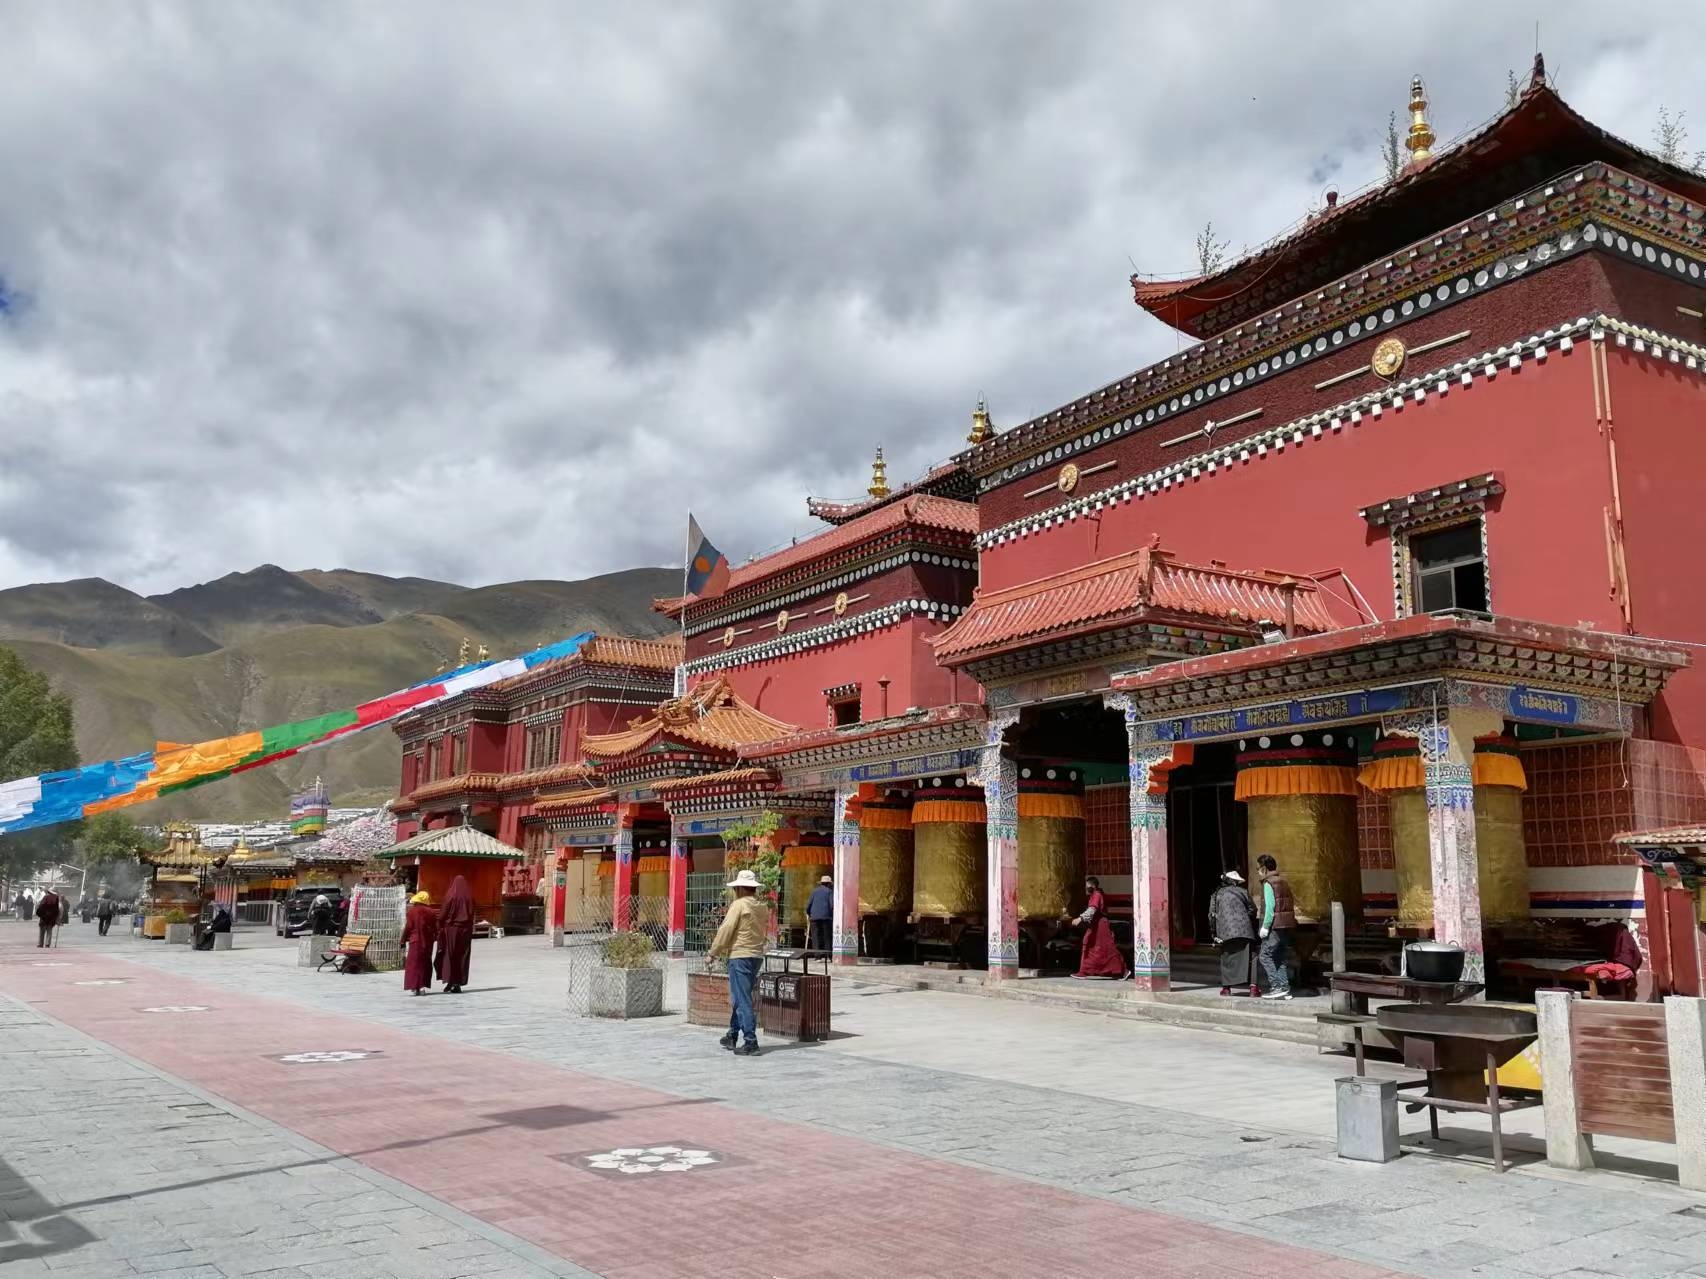 #寻找最美旅行地 #发现旅途的色彩 这是玉树地区的著名宗教古迹，距今已有三百多年历史，由藏传佛教萨迦